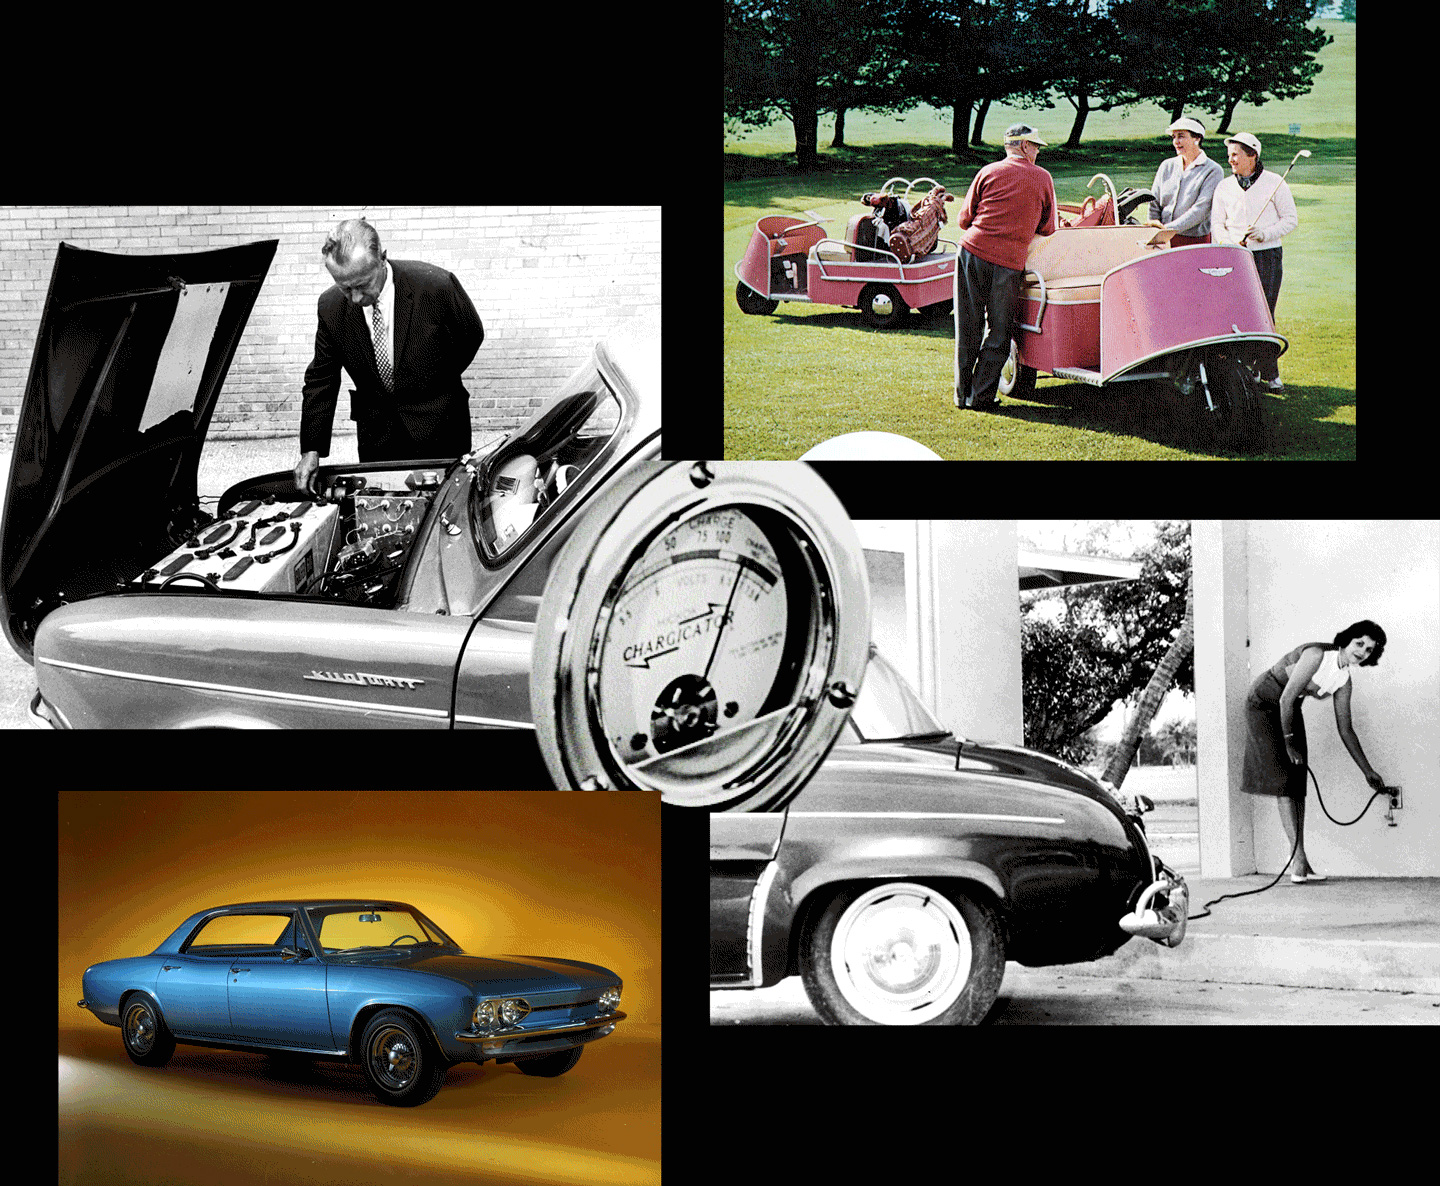 Mẫu xe Henney Kilowatt năm 1966 được tùy chỉnh lại từ Renault Dauphines (trên và dưới bên trái). Xe golf cart chạy điện do Lektro giới thiệu (trên cùng bên phải). Mẫu xe Electrovair II từ GM (dưới cùng bên phải)